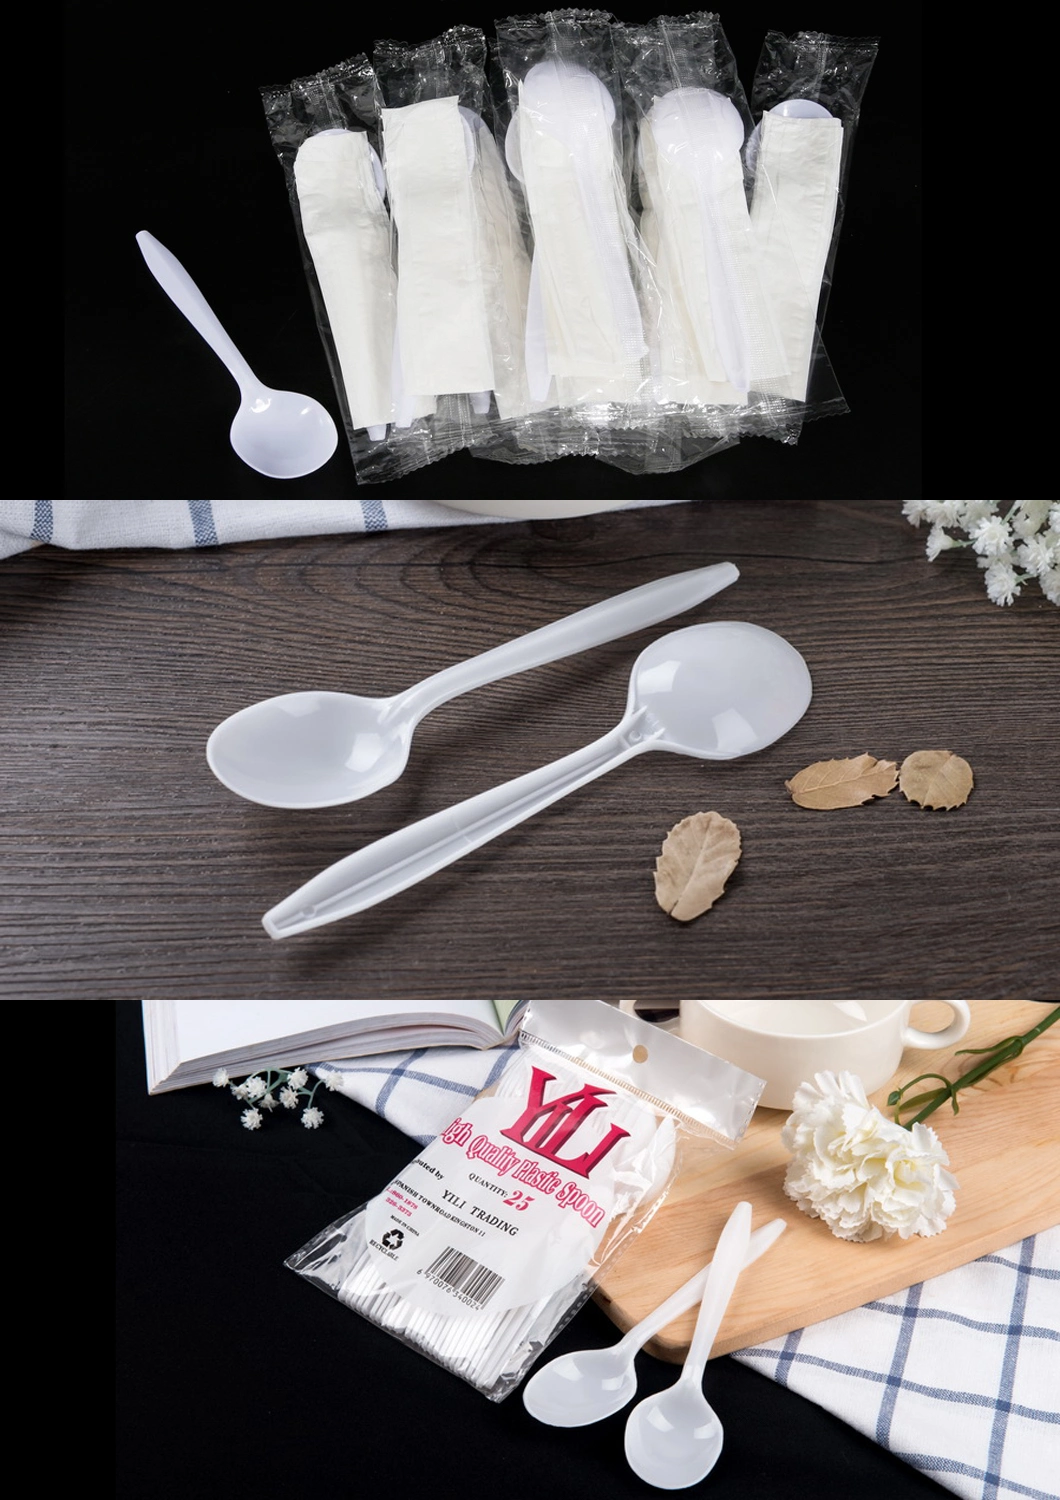 White PP Disposable Plastic Spoon Fork Dessert Spoon